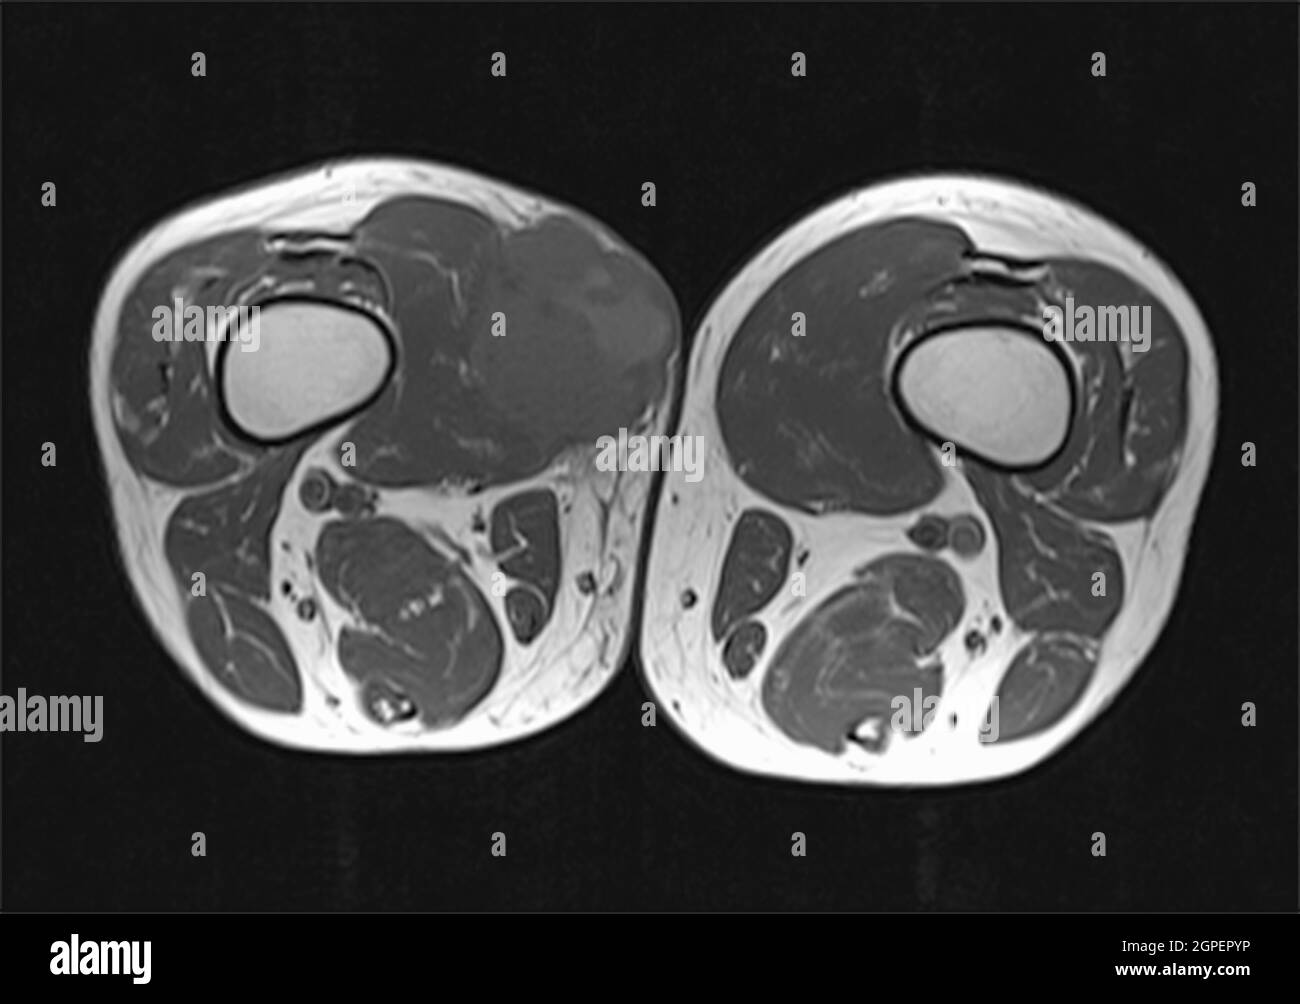 IRM d'une tumeur maligne (sarcome) sur la cuisse droite d'un patient adulte de sexe masculin, acquise par imagerie par résonance magnétique (IRM) Banque D'Images